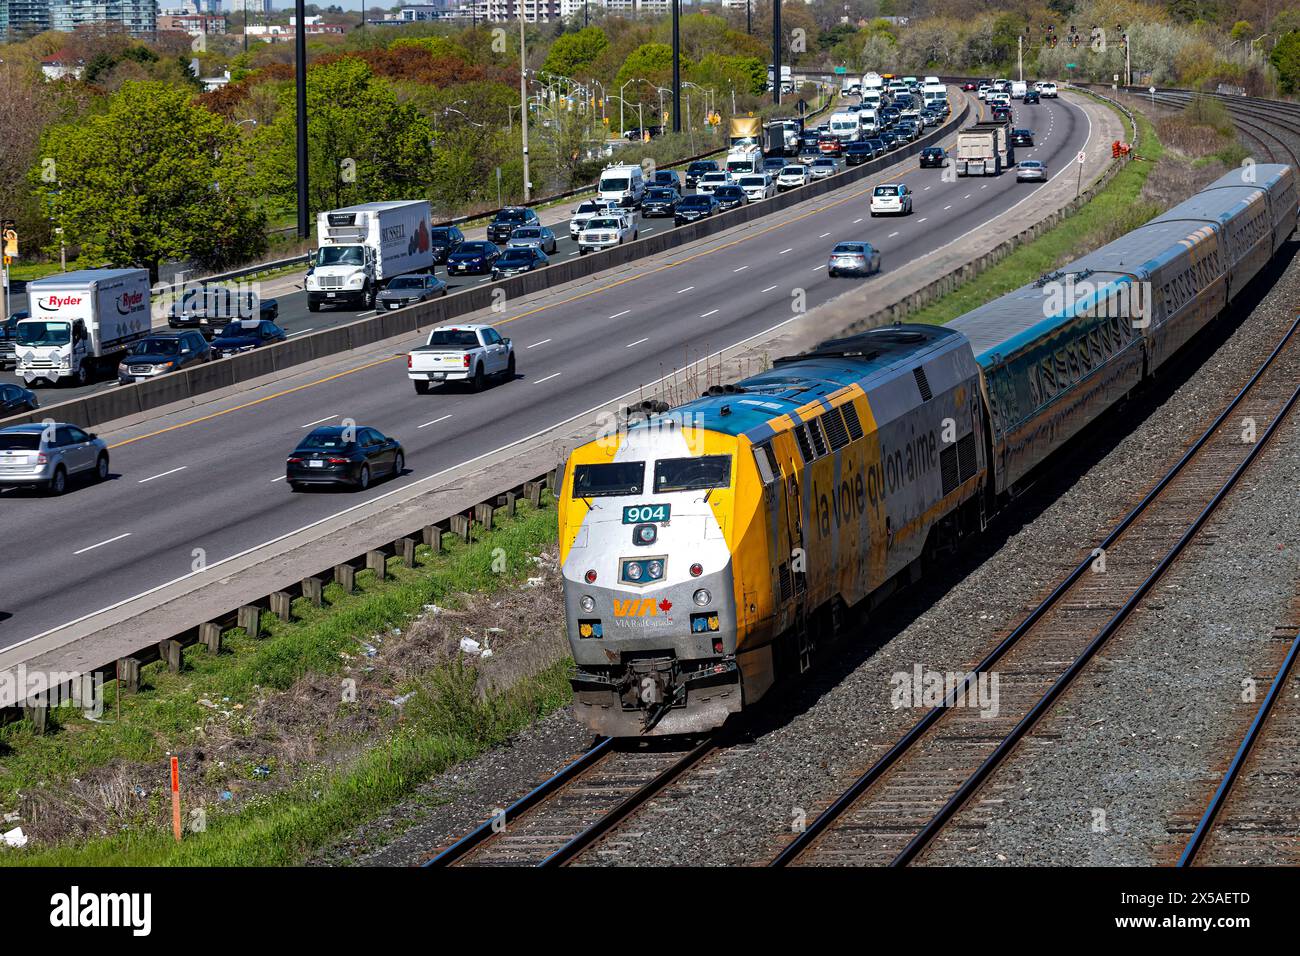 Gardiner Expressway and Via Rail rail traffic during rush hour traffic. Toronto Ontario Canada Stock Photo